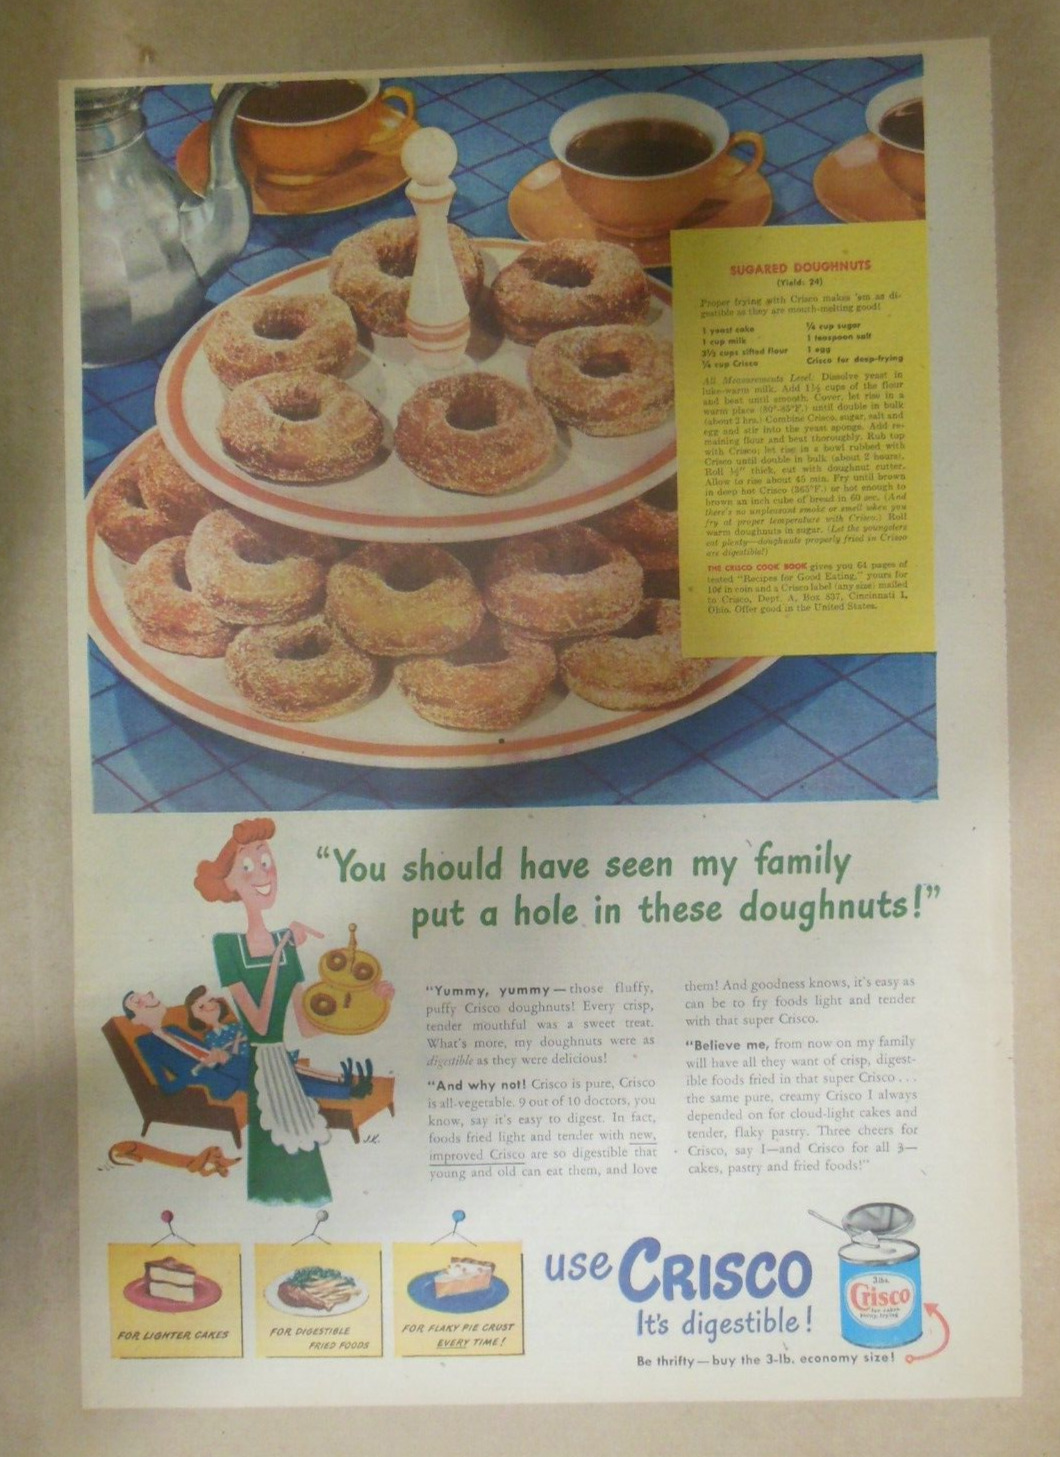 Crisco Shortening Ad: Sugared Doughnuts Recipe  1940\'s Size: 11 x 15 inches